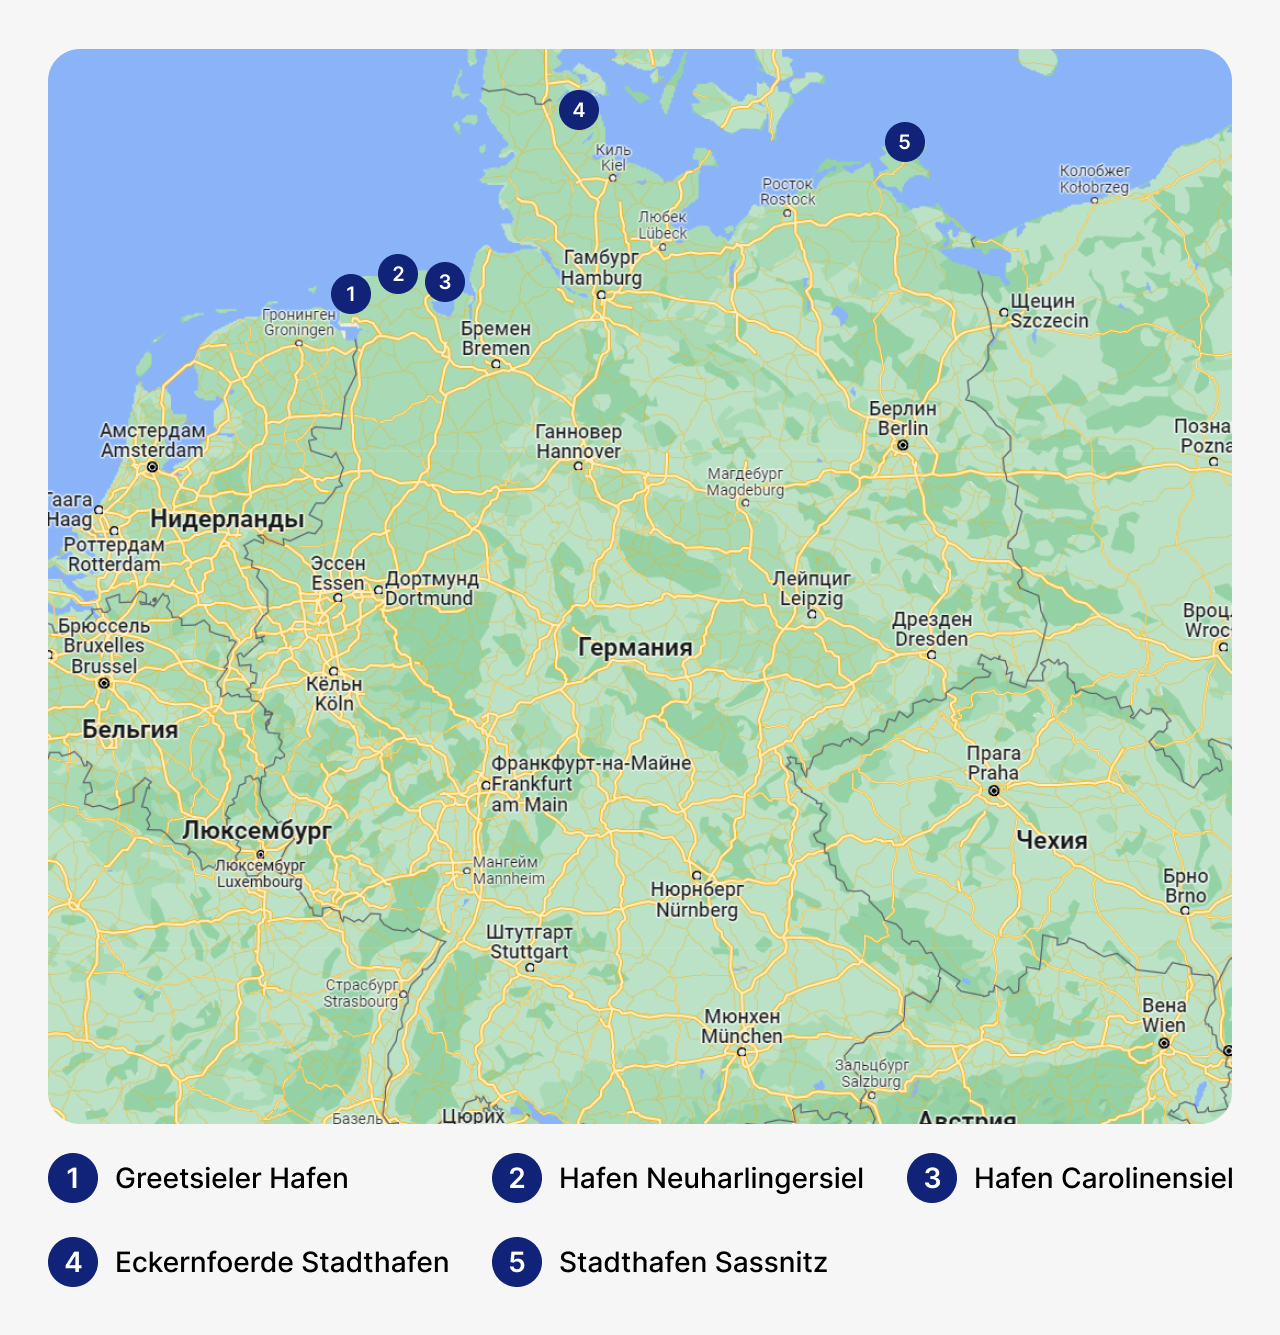 Лучшие марины в Германии, карта Германии с маринами, стоянка для яхт в Германии, где хранить яхты в Германии